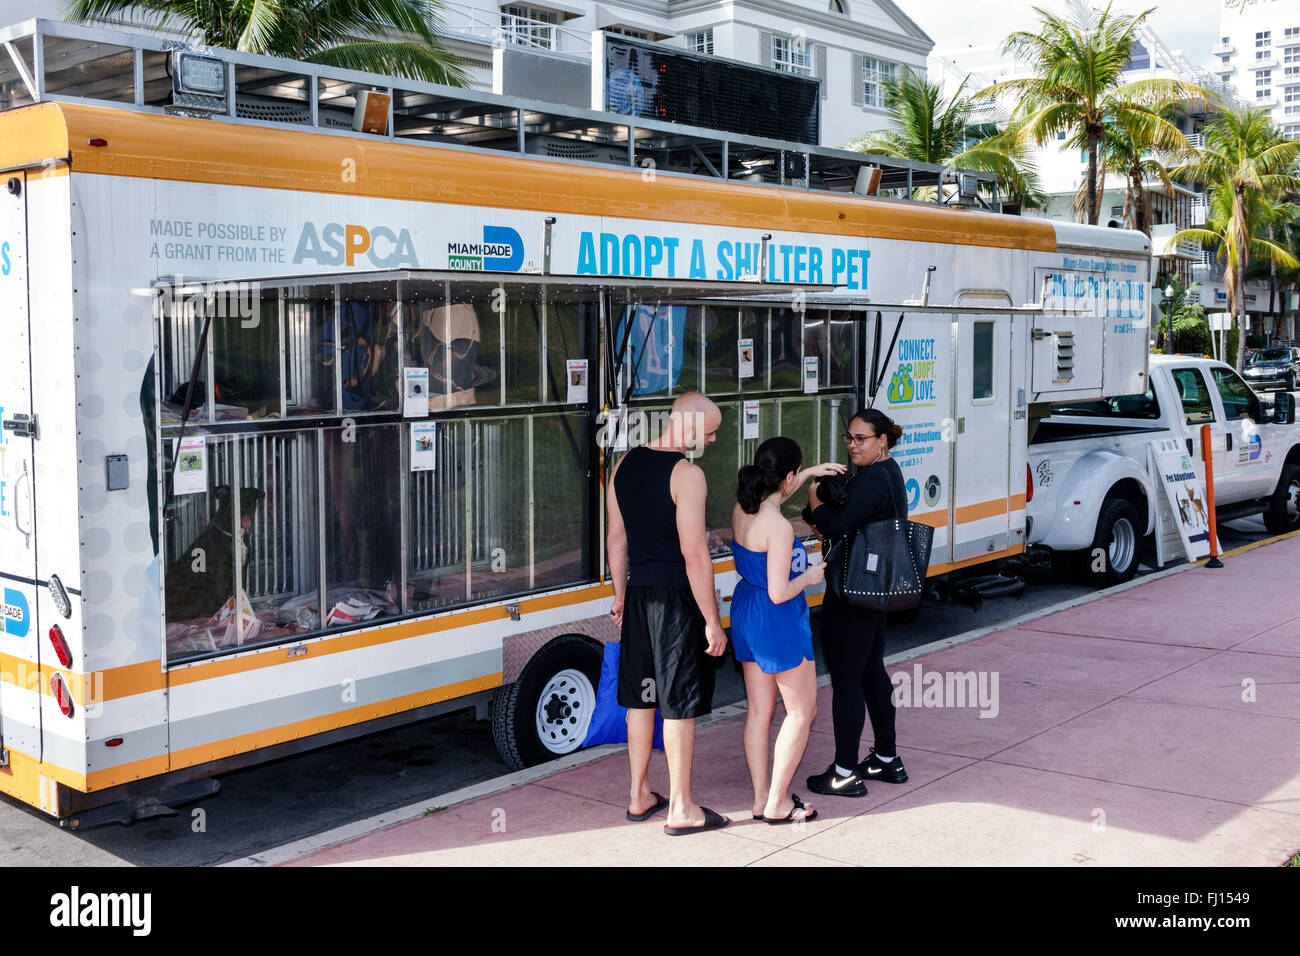 Miami Beach Florida, mobile adottare animale domestico rifugio, rimorchio, adottando, adulto, adulti, uomo uomini maschio, donna donna donne, coppia, cercando, ASPCA, cane, cani, FL1601 Foto Stock